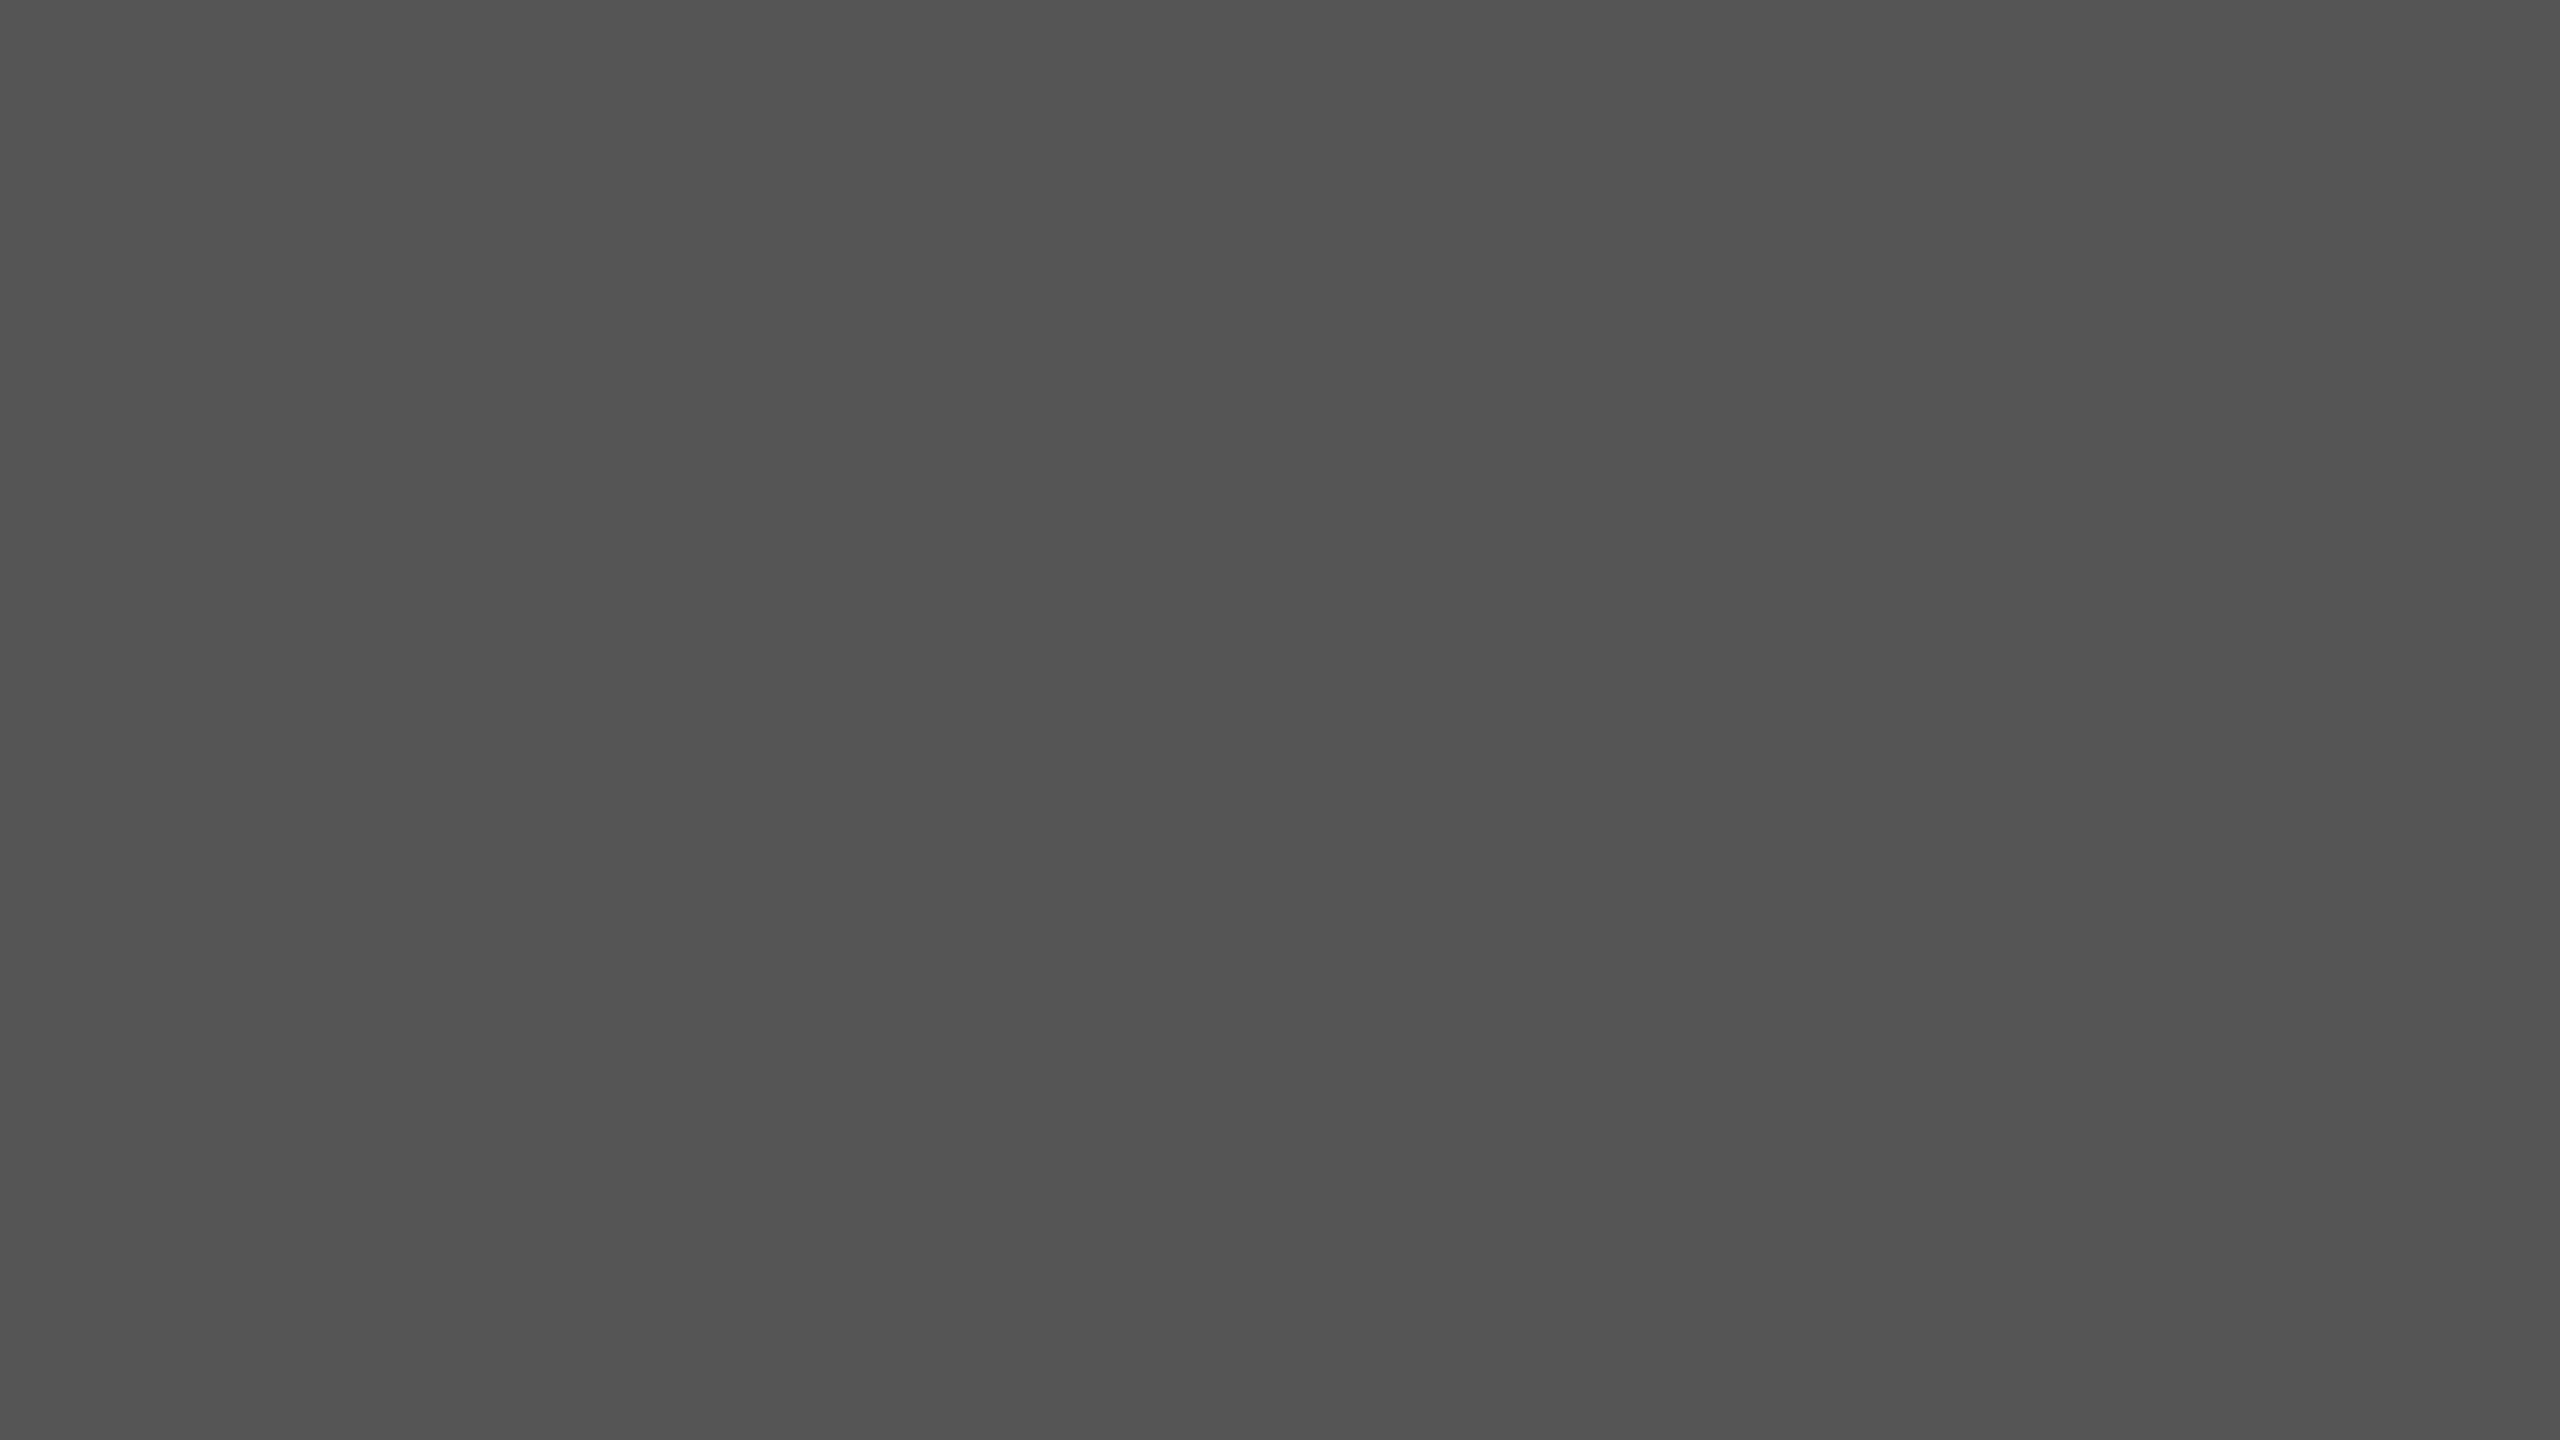 2560x1440-davys-grey-solid-color-backgro